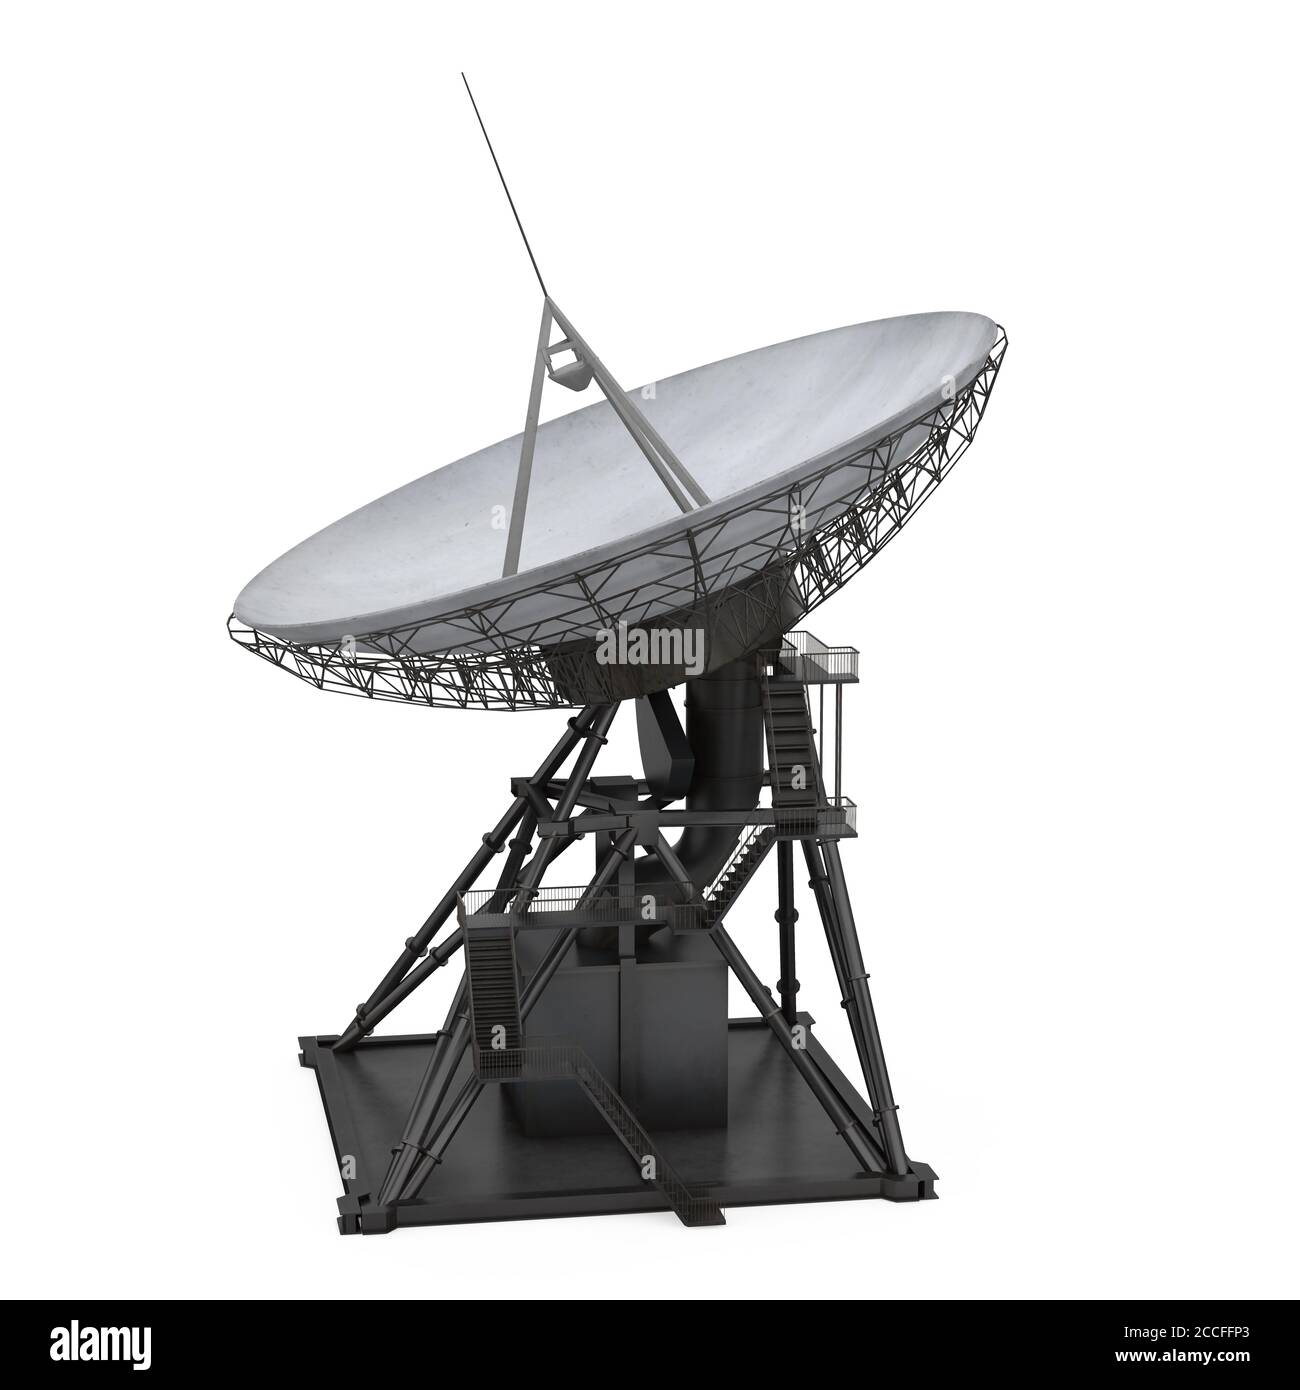 Antenne parabolique – Média LAROUSSE